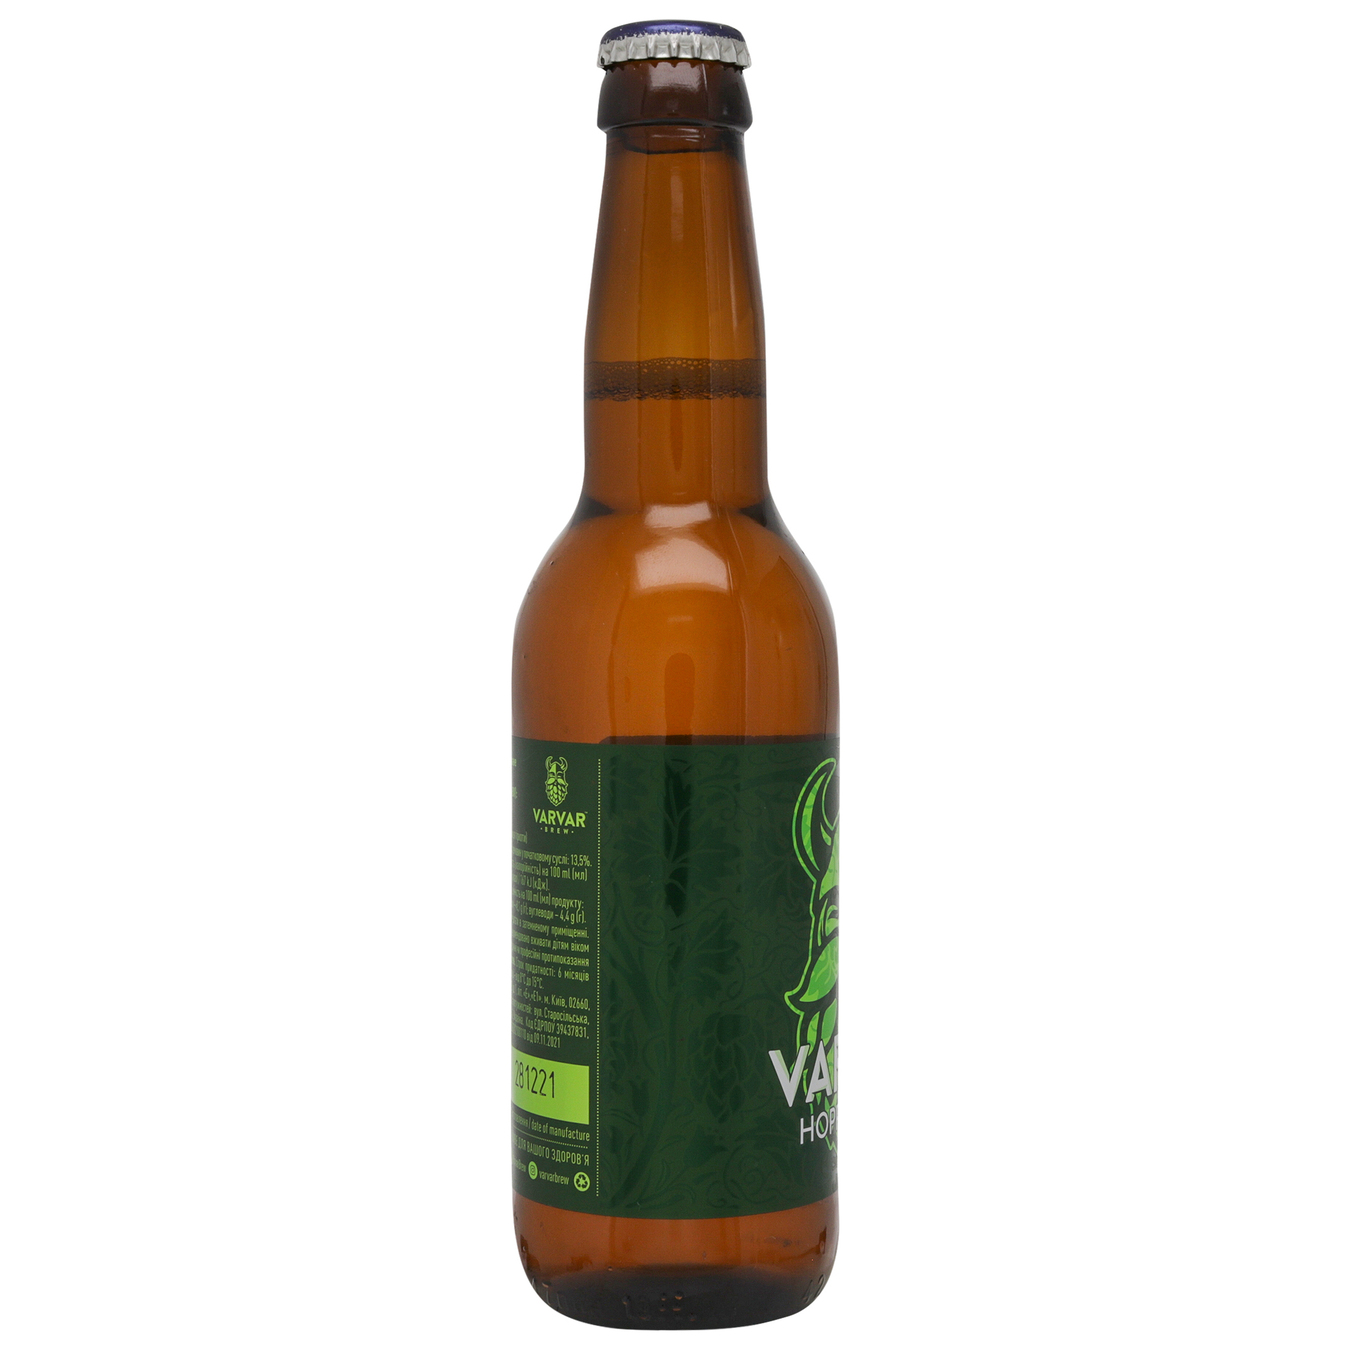 Пиво светлое VARVAR HOPPY LAGER 5,6% 0,33л стеклянная бутылка 4